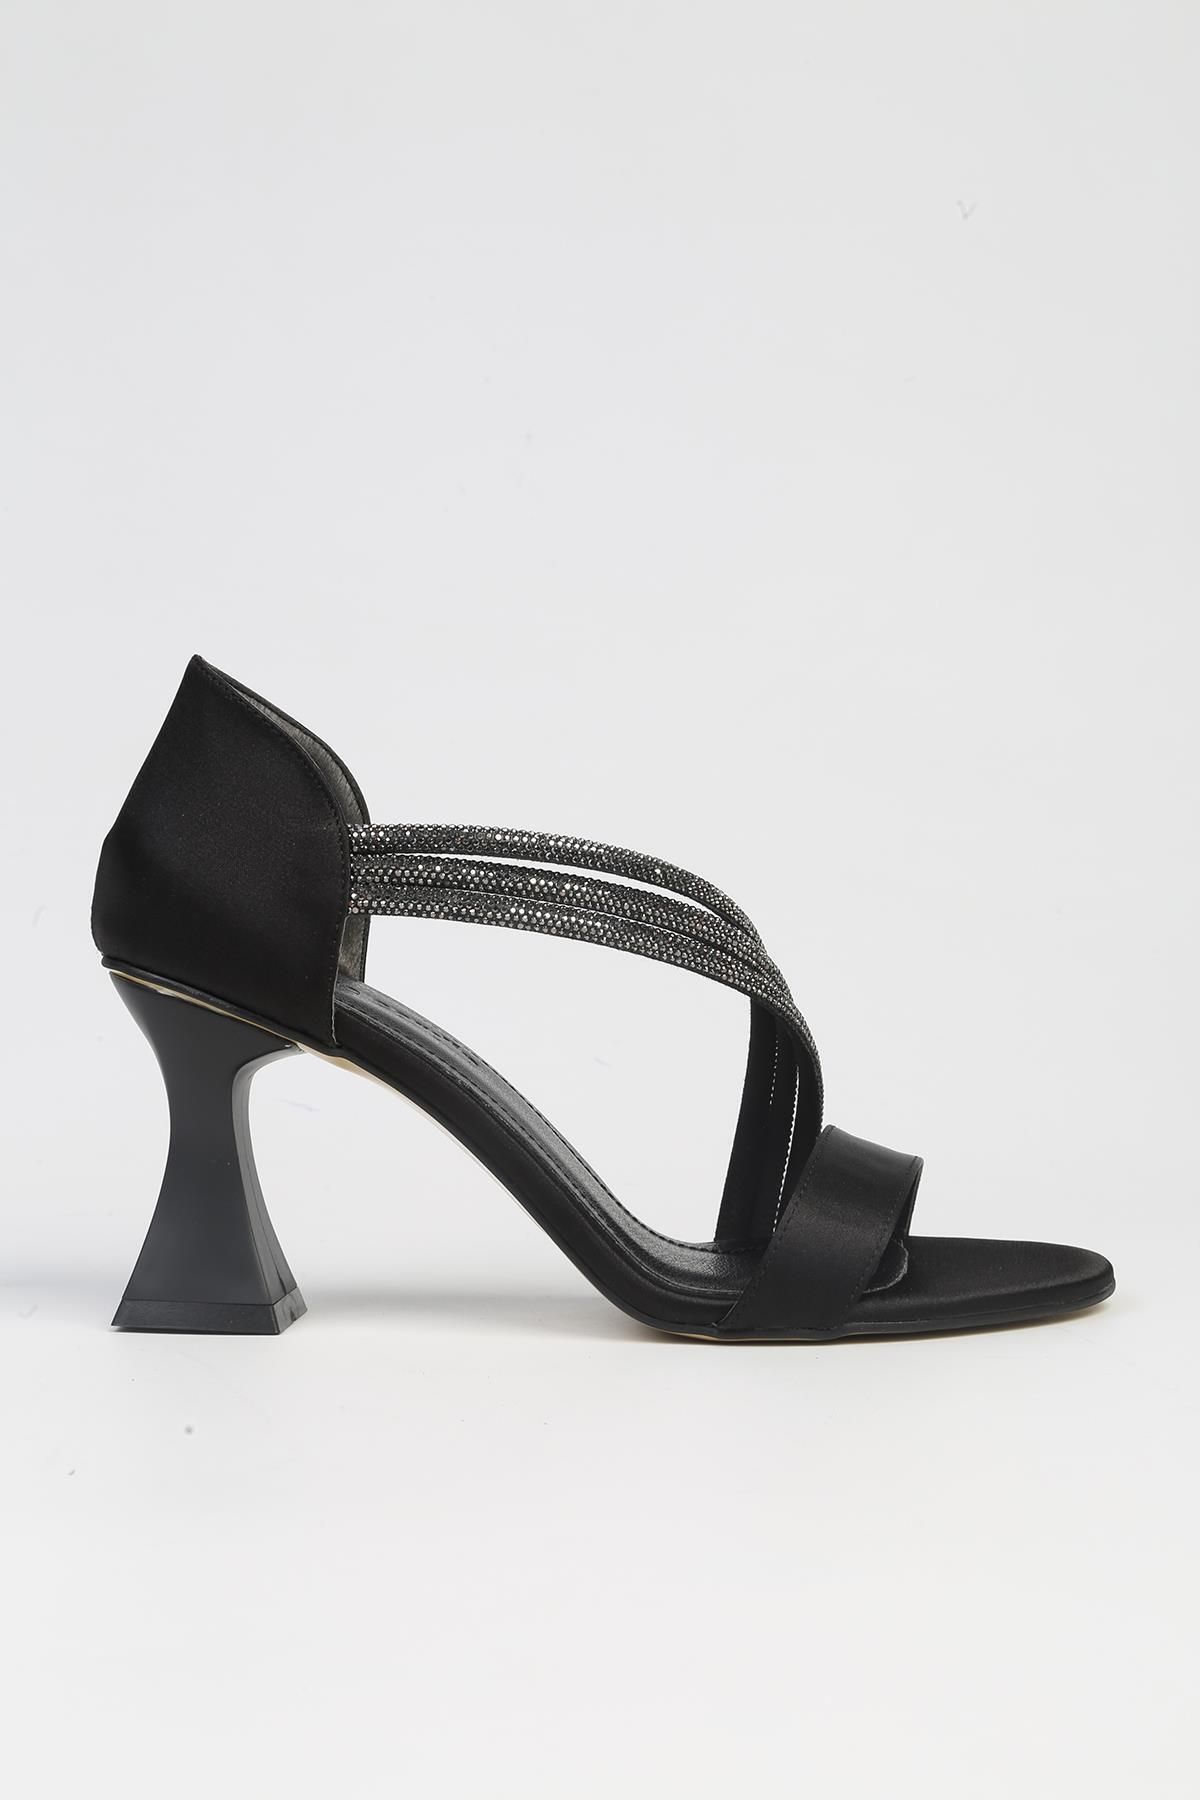 Pierre Cardin ® | PC-53009- 3691 Siyah-Kadın Topuklu Ayakkabı